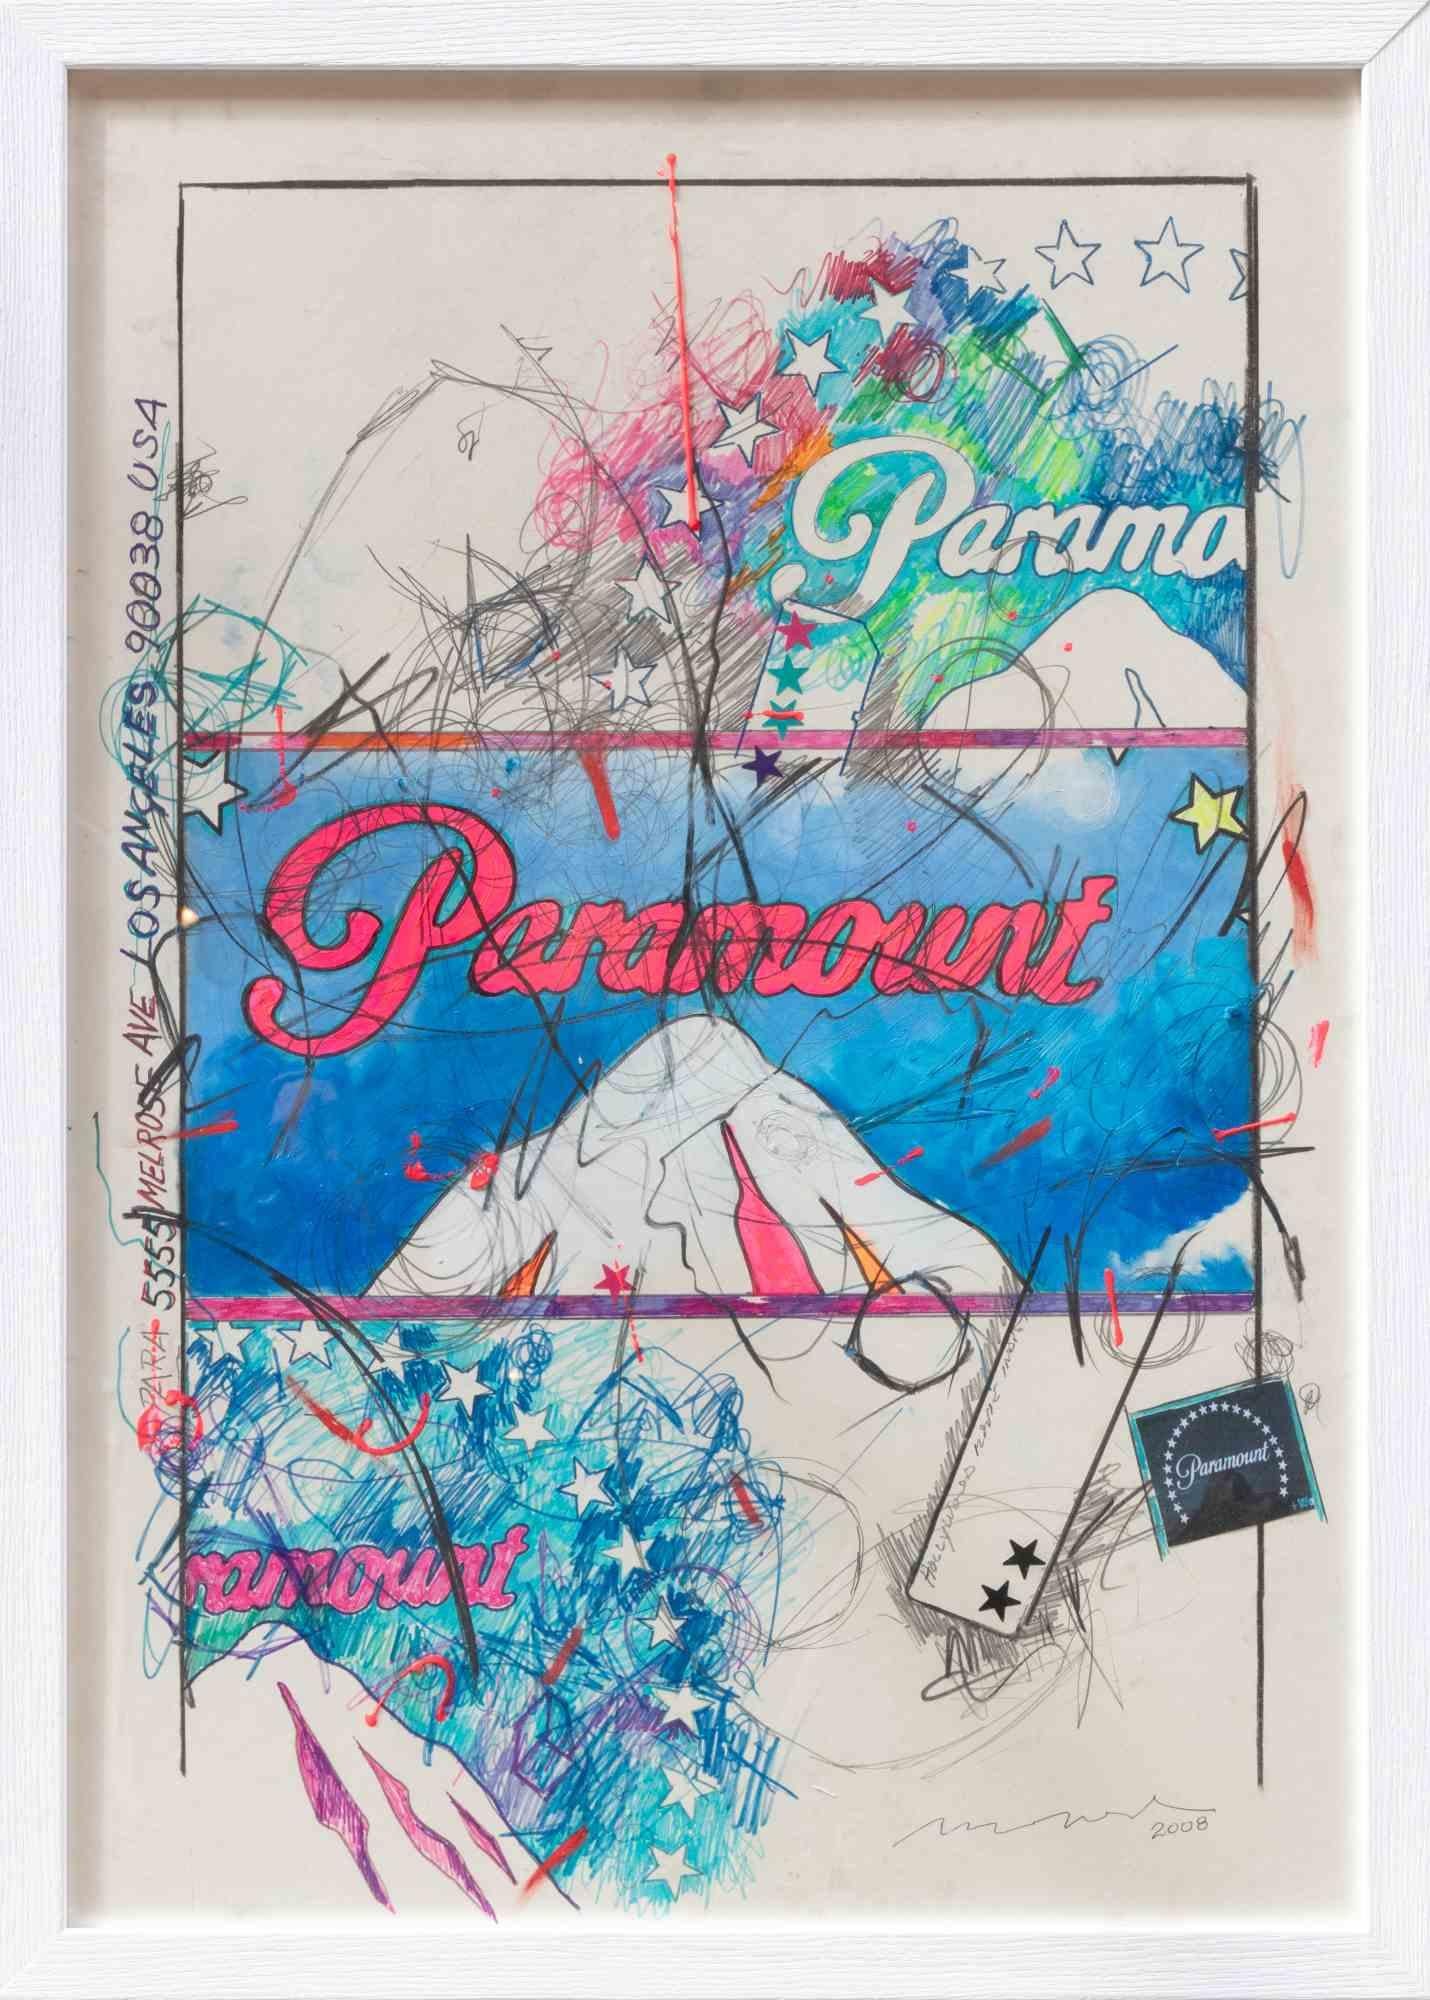 Paramount - Mixed media by Enrico Manera - 2008 1